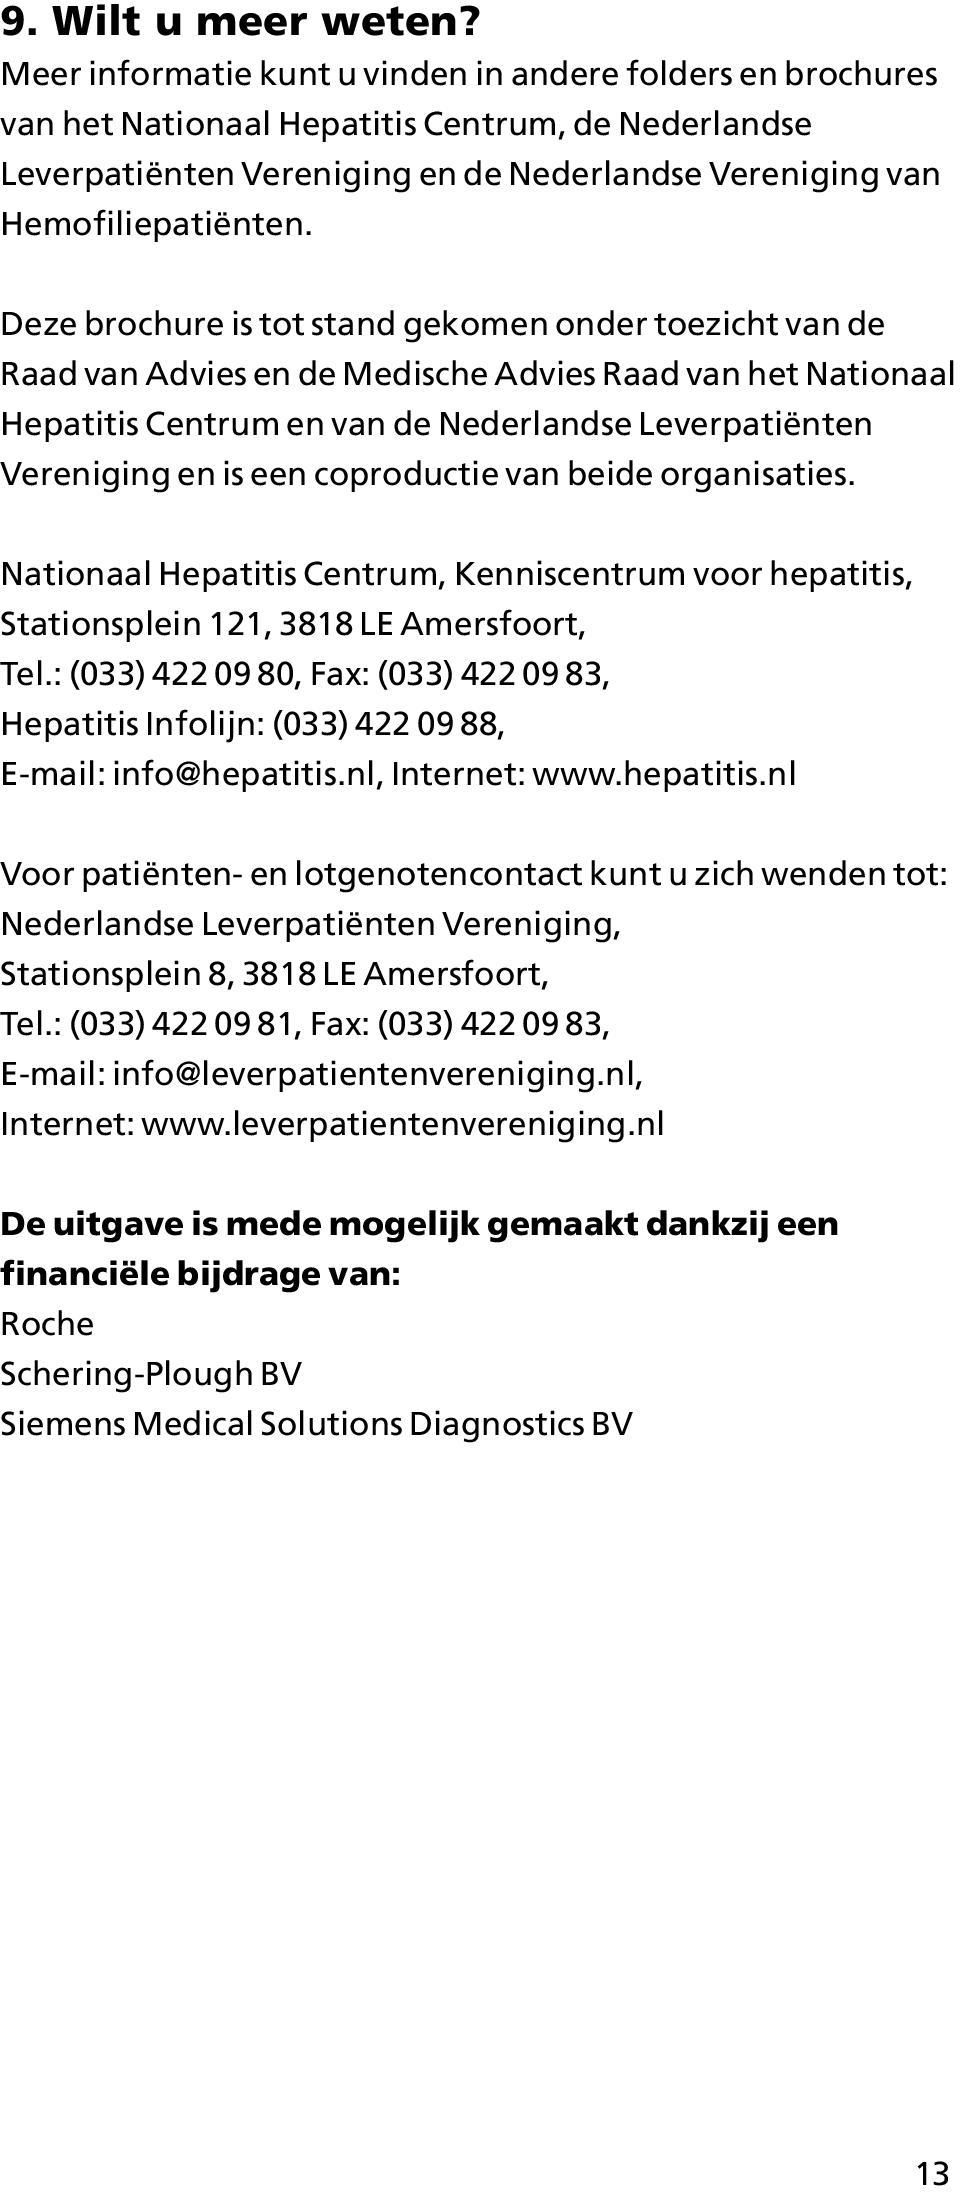 Deze brochure is tot stand gekomen onder toezicht van de Raad van Advies en de Medische Advies Raad van het Nationaal Hepatitis Centrum en van de Nederlandse Leverpatiënten Vereniging en is een